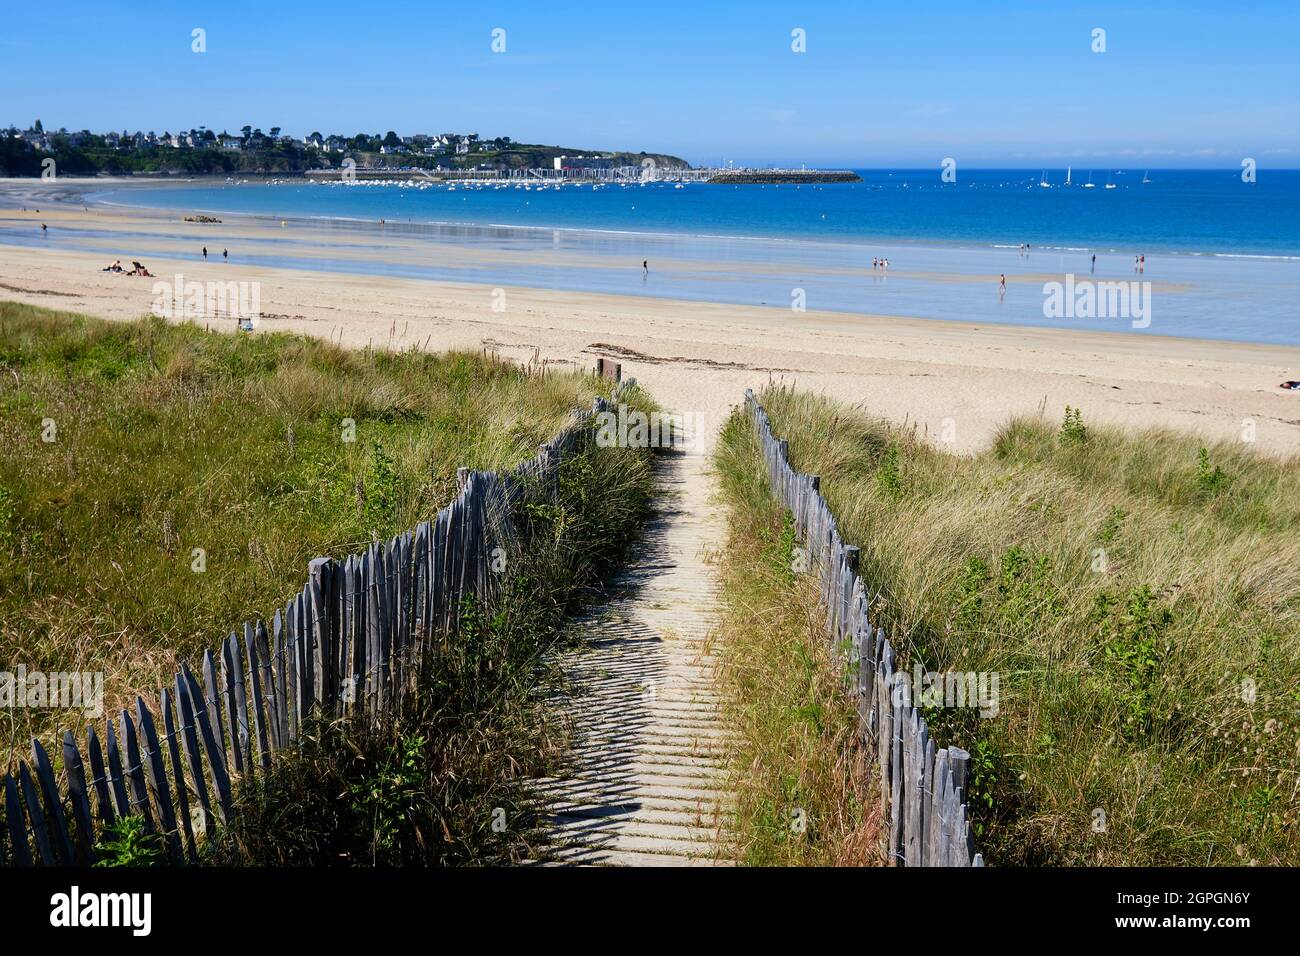 France, Cotes d'Armor, Cote d'Emeraude (Emerald Coast), Saint Cast le Guildo, grand plage of Saint Cast le Guildo Stock Photo